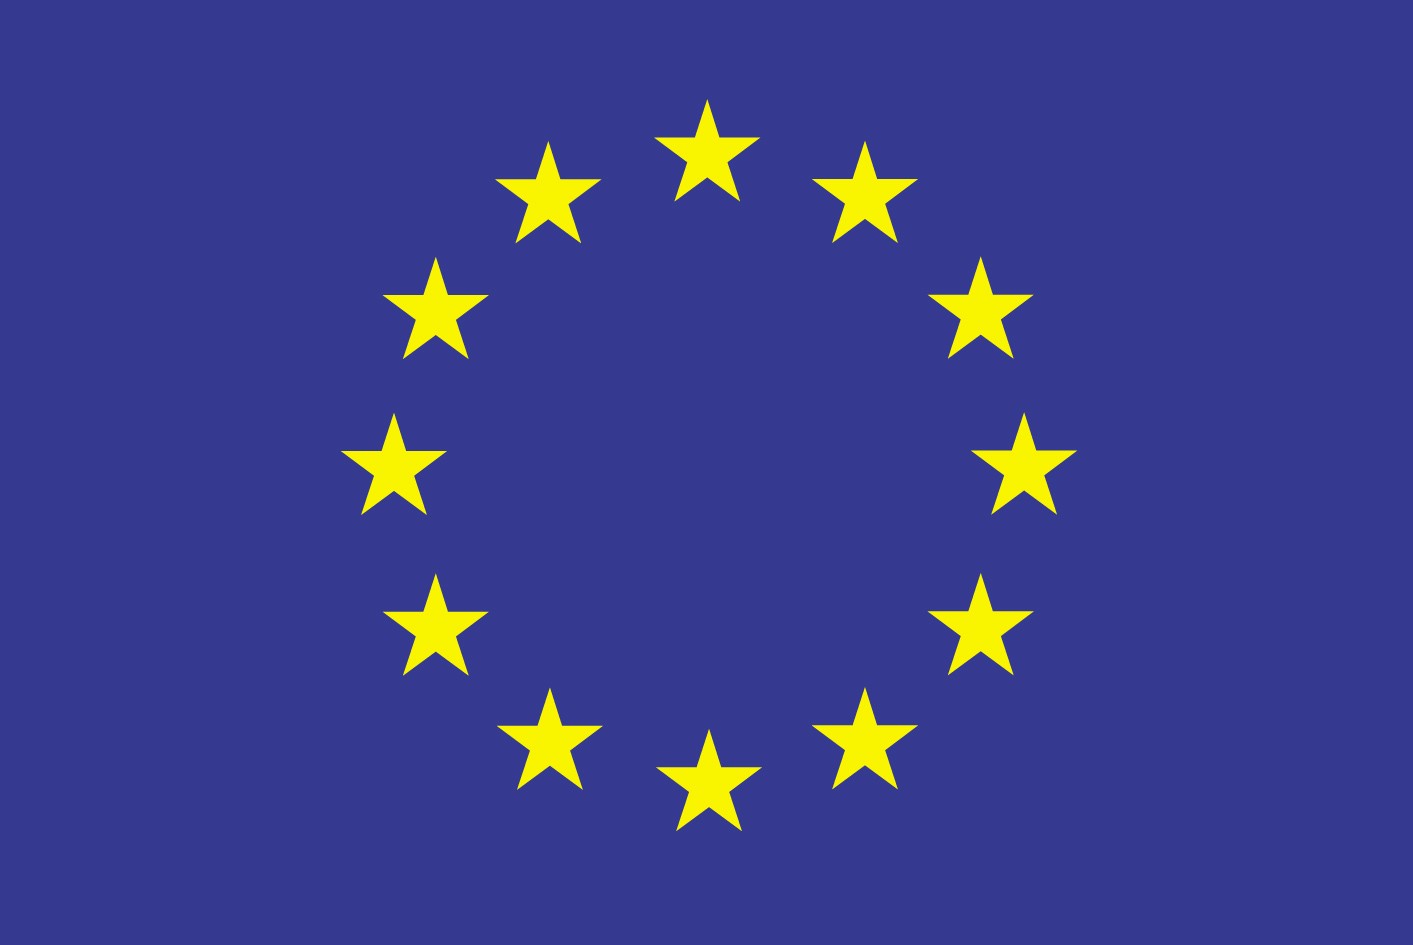 Η ΕΕ δημοσιοποίησε λίστα με 81 χώρες που ίσως διευκολύνουν την φοροαποφυγή